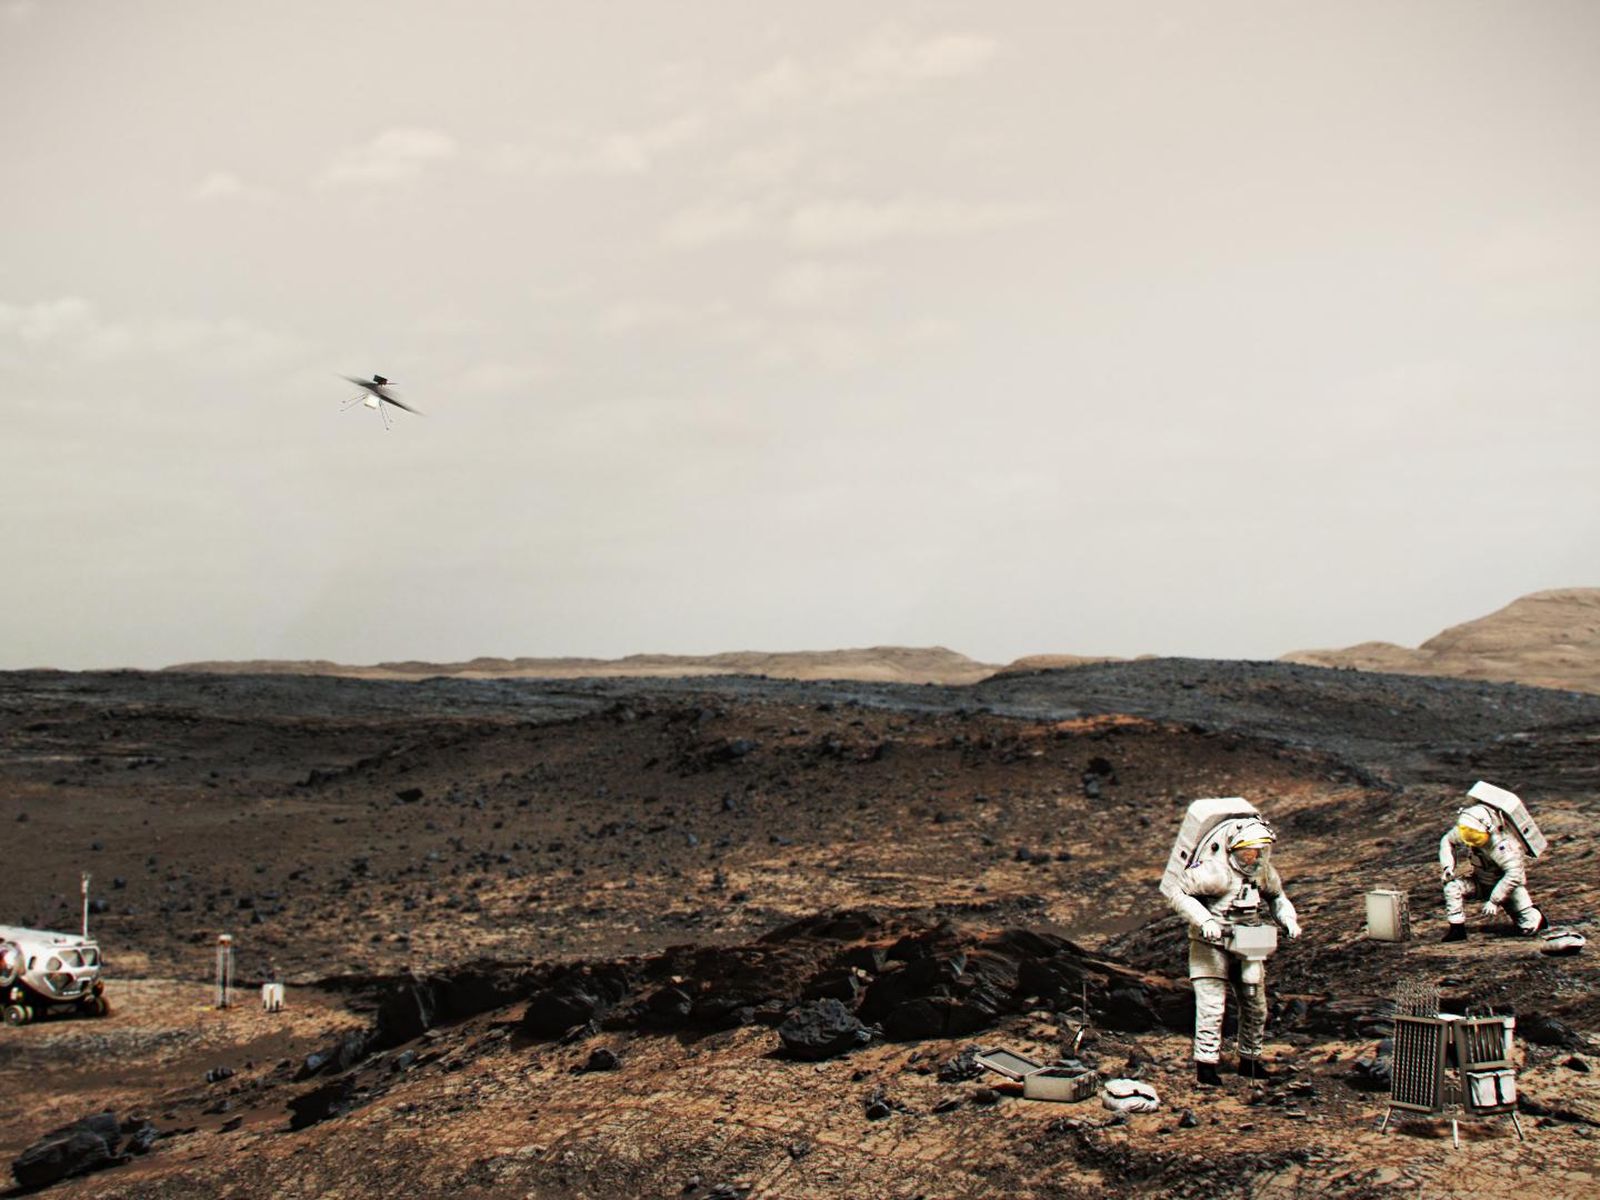 Astronot yang bekerja di Mars bisa menggunakan helikopter (terlihat di atas mereka bekerja di Mars) mirip dengan helikopter Mars Innovation.